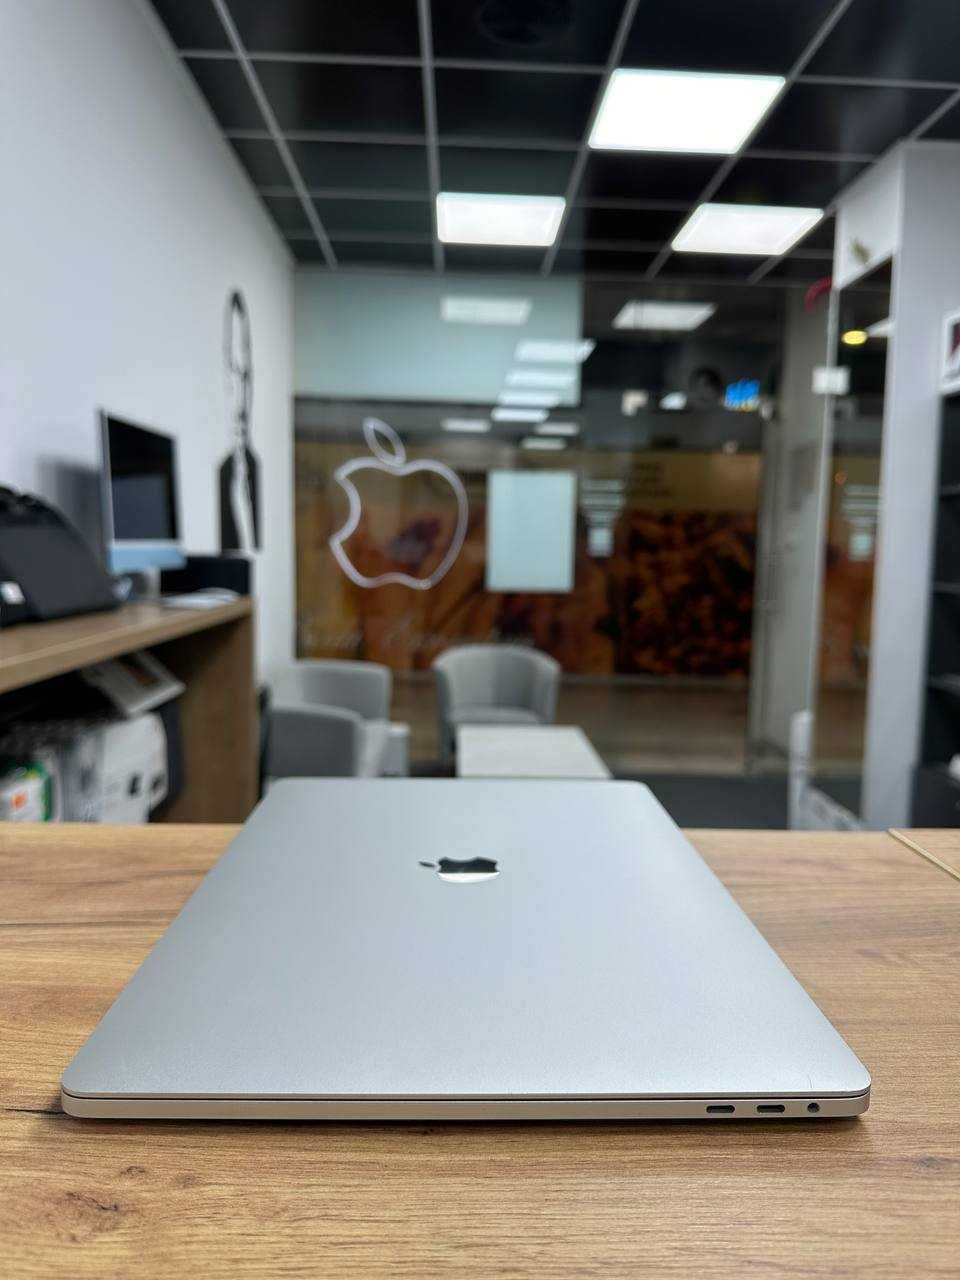 Гарантія i7|16|512 Макбук 86 циклів MacBook Pro 15 2018 Відмінний стан